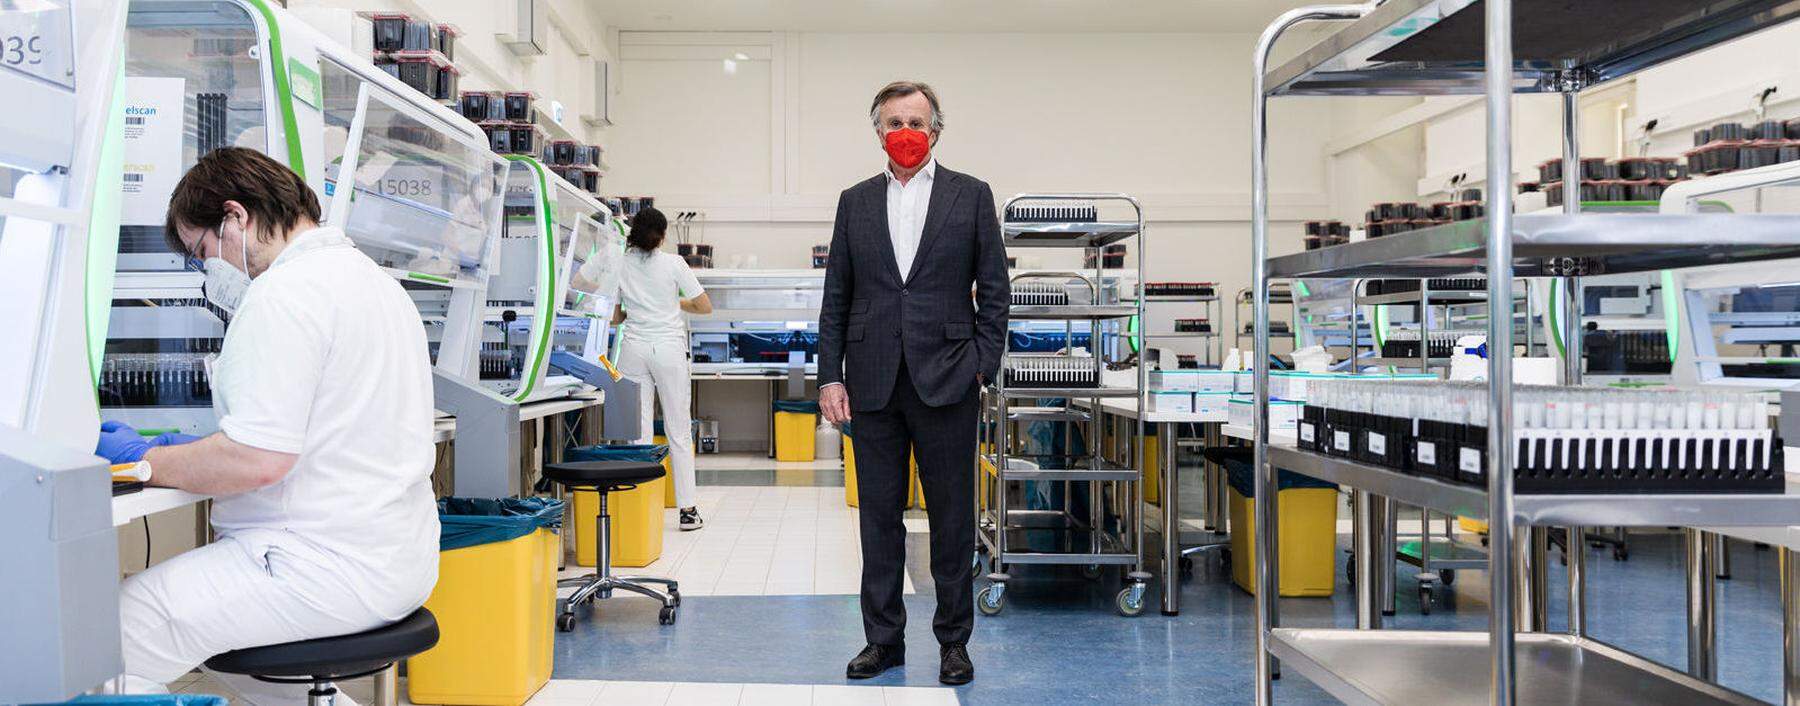 Lifebrain-Geschäftsführer Michael Havel in einem der Labore.